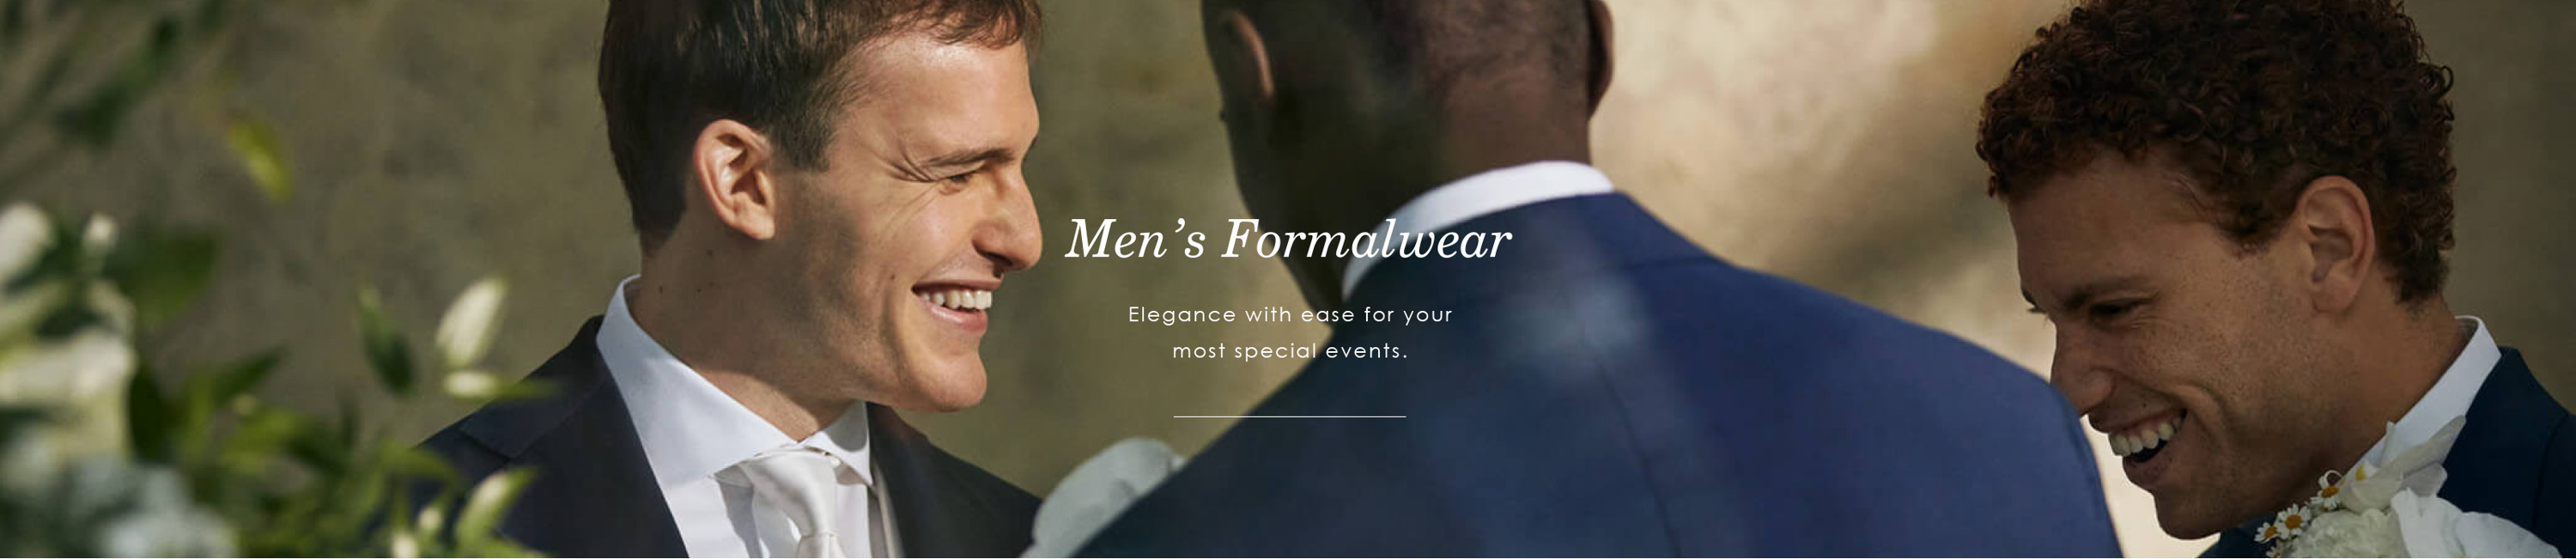 Men's Formalwear